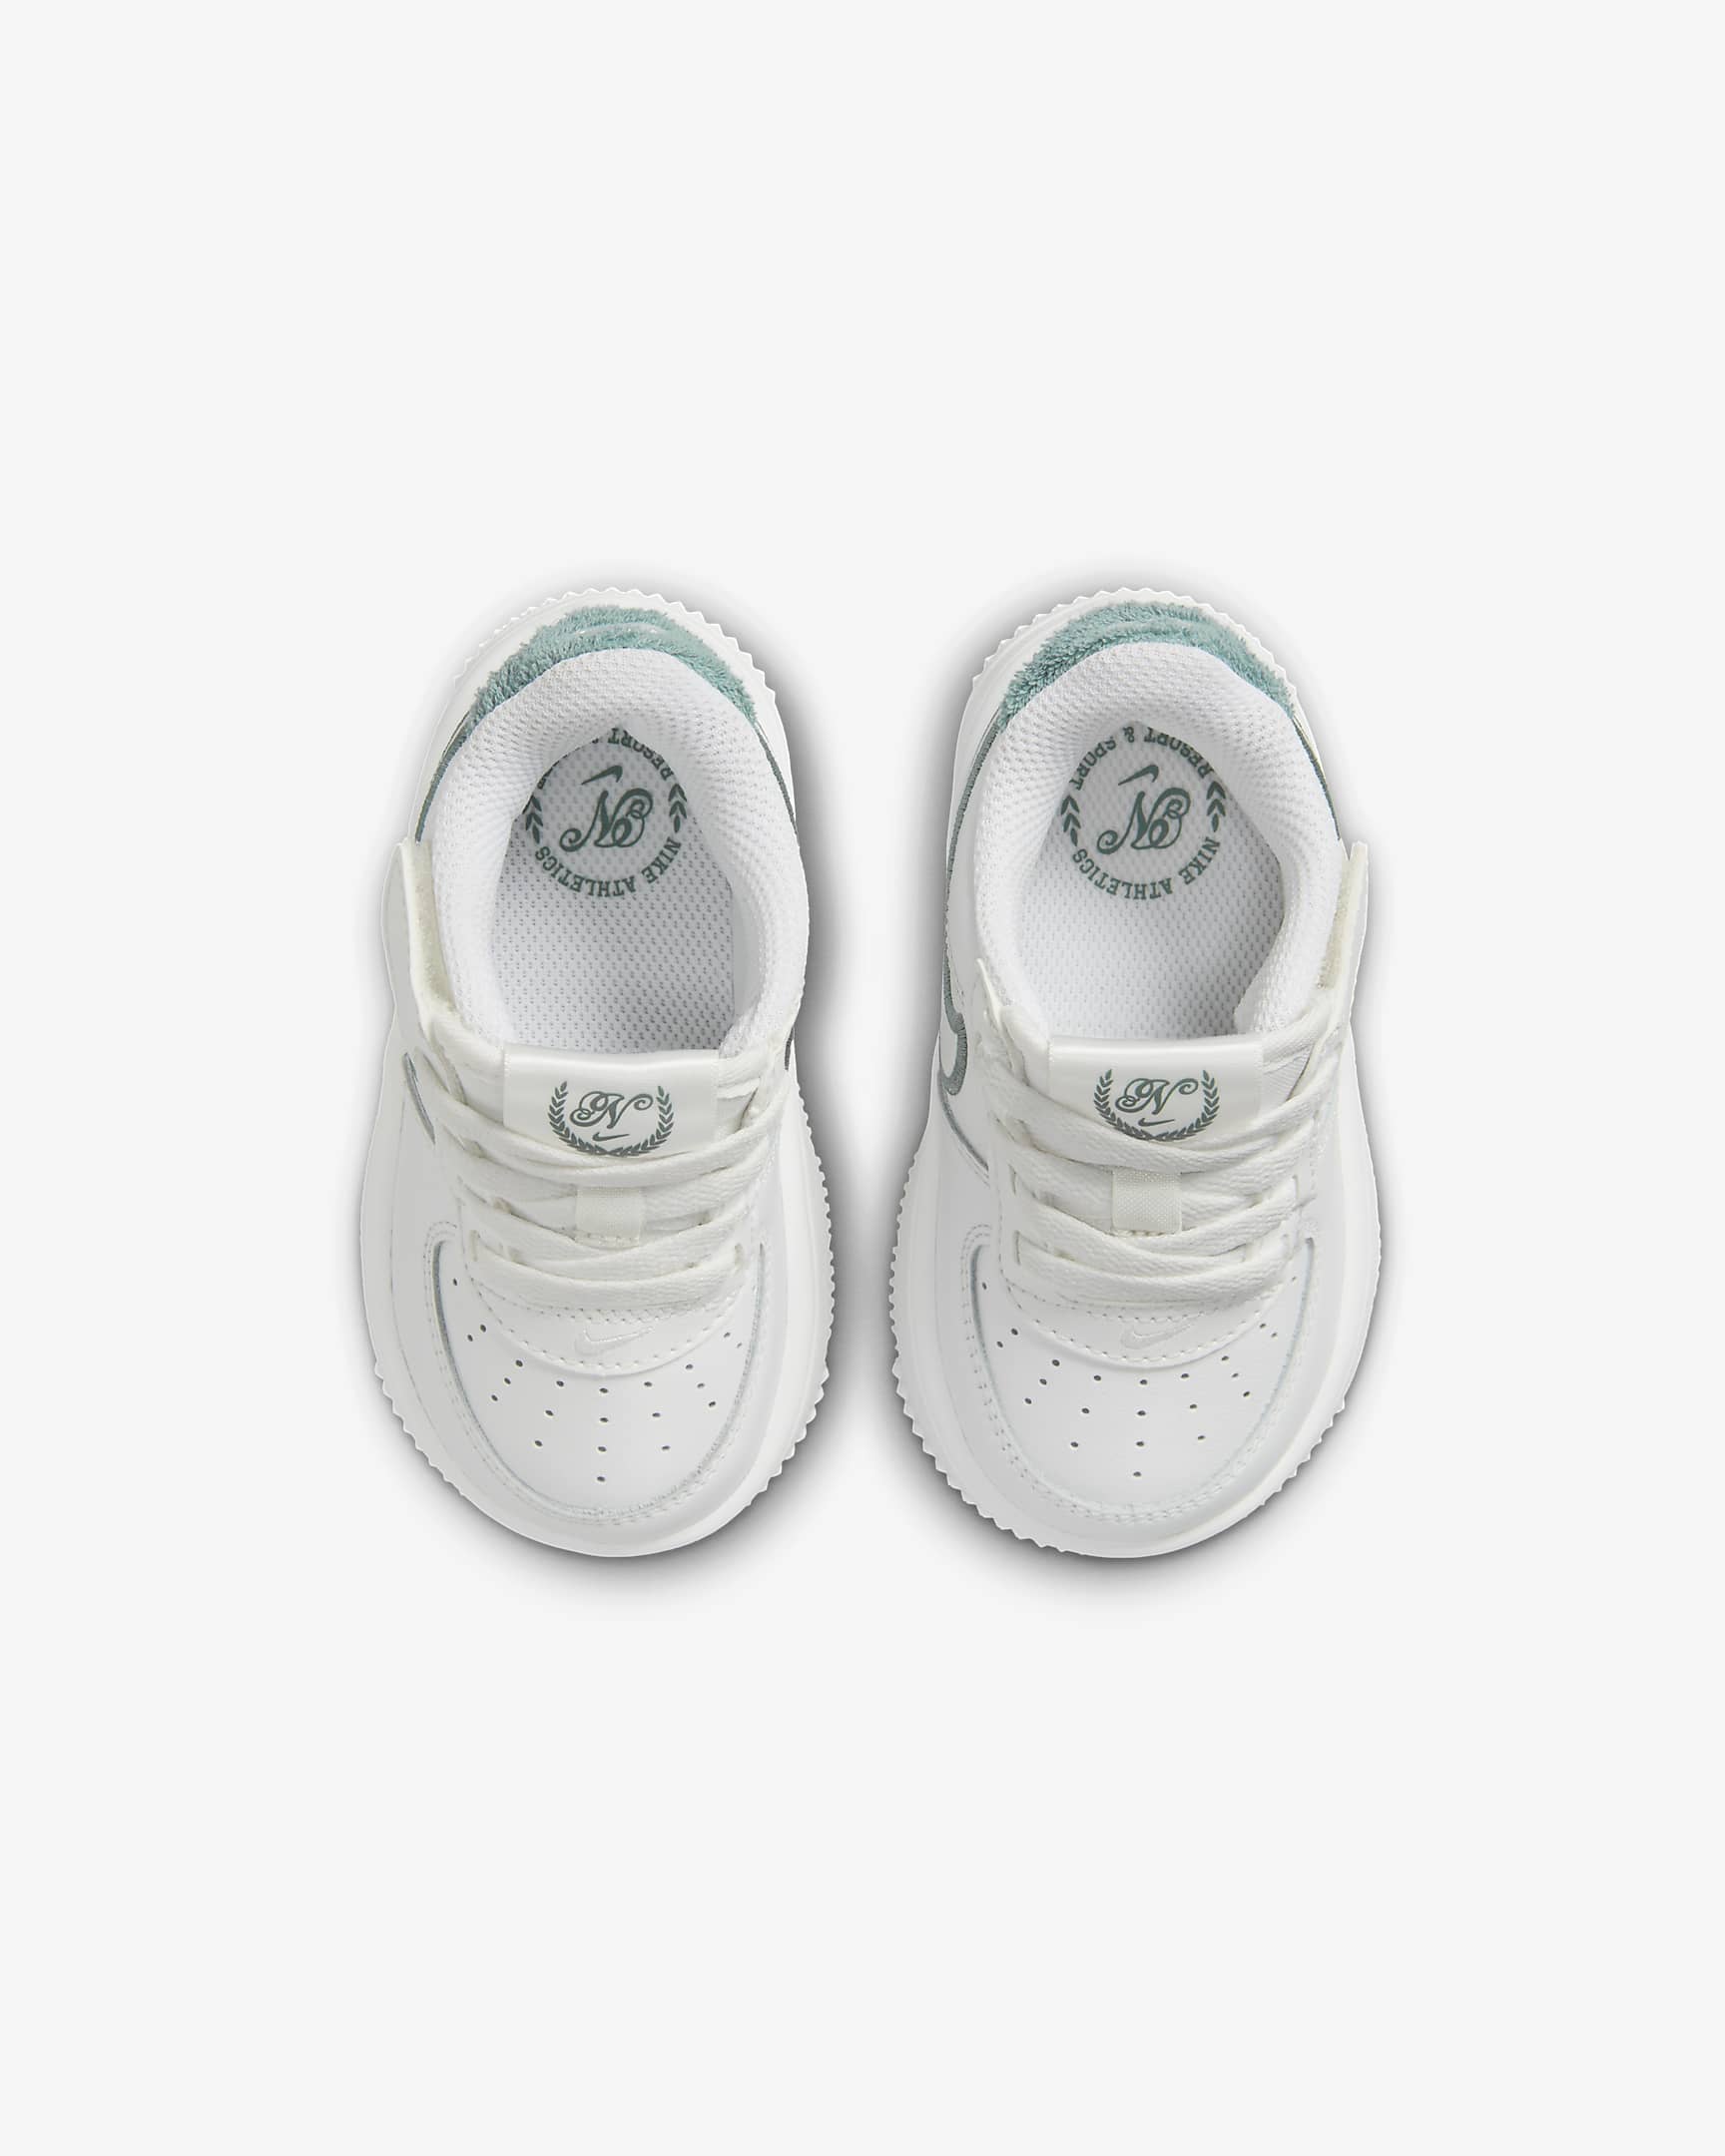 Nike Force 1 Low LV8 EasyOn Baby/Toddler Shoes - Summit White/Bicoastal/Summit White